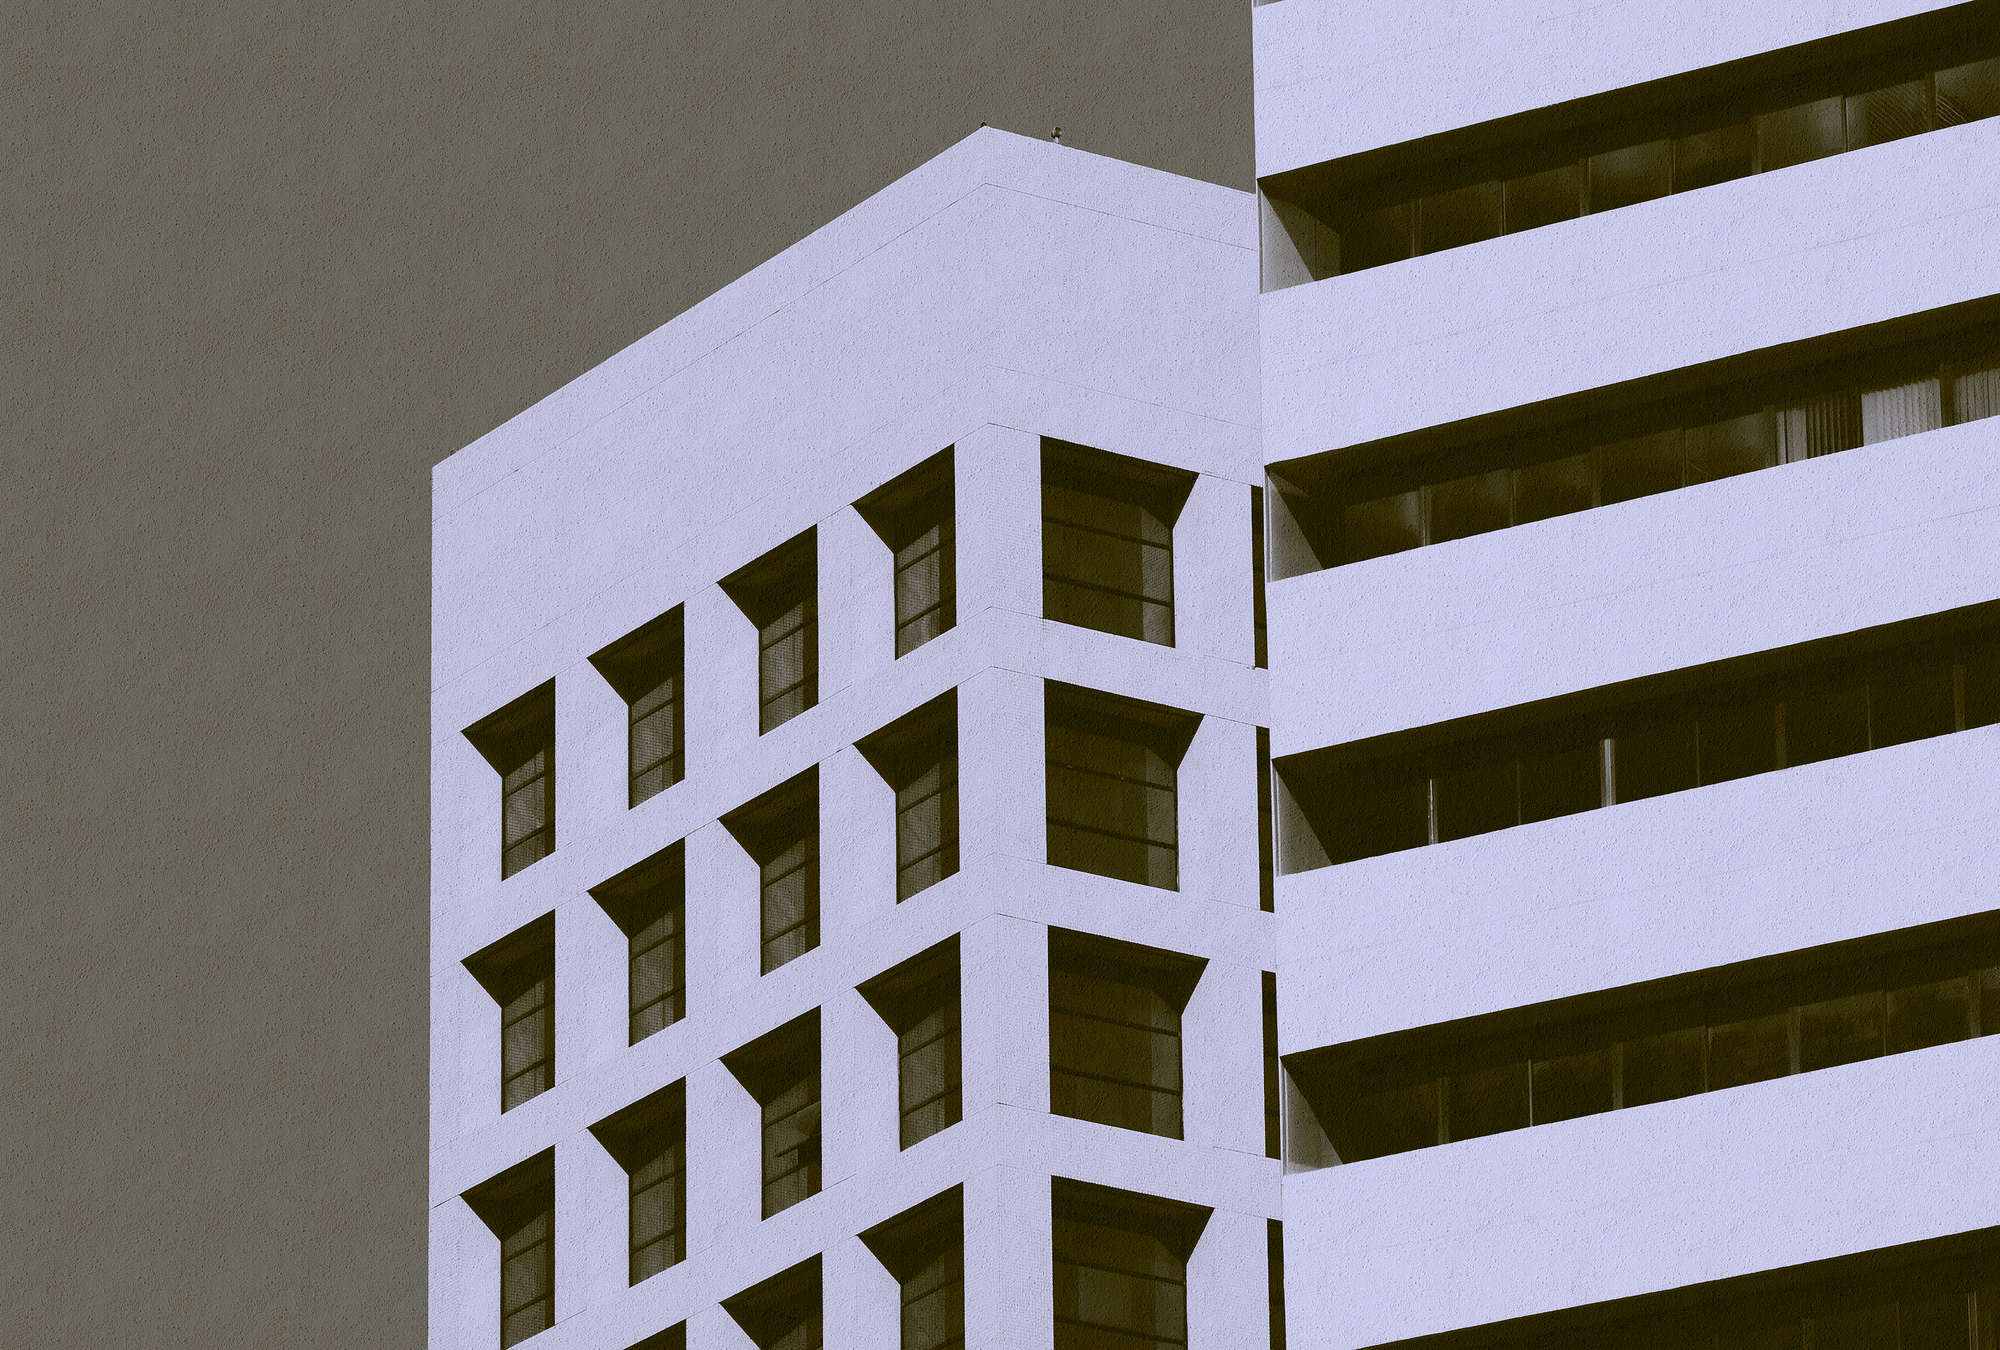             Skyscraper 1 - Fototapete mit Gebäude im Retrolook in Rauputz Struktur – Schwarz, Taupe | Mattes Glattvlies
        